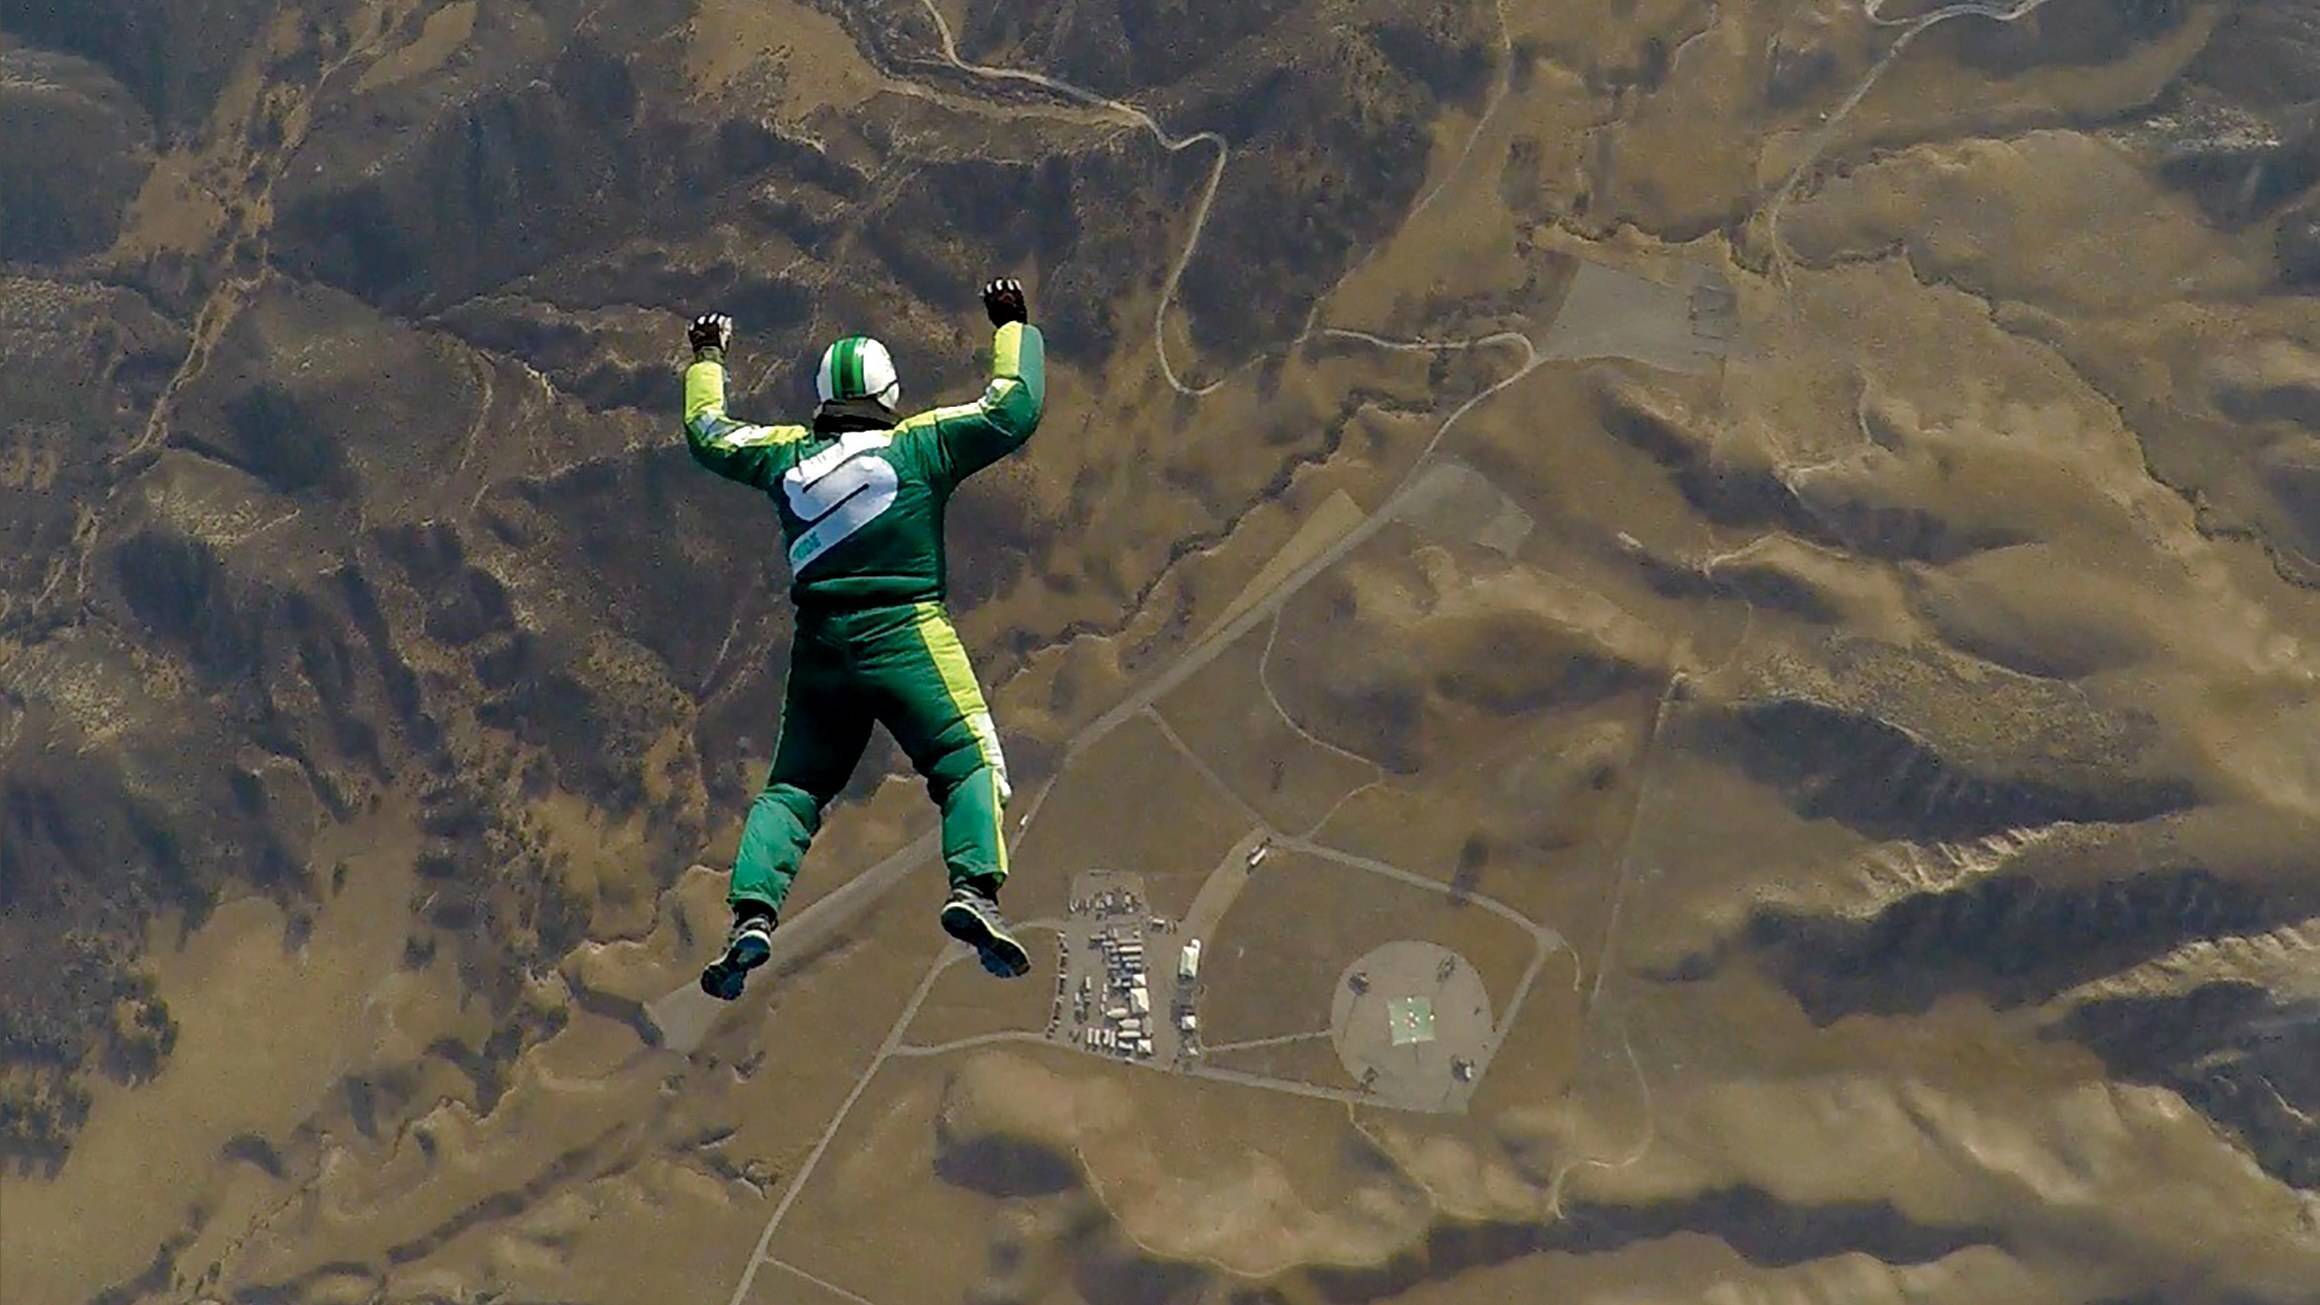 Люк айкинс совершил первый в истории прыжок без парашюта